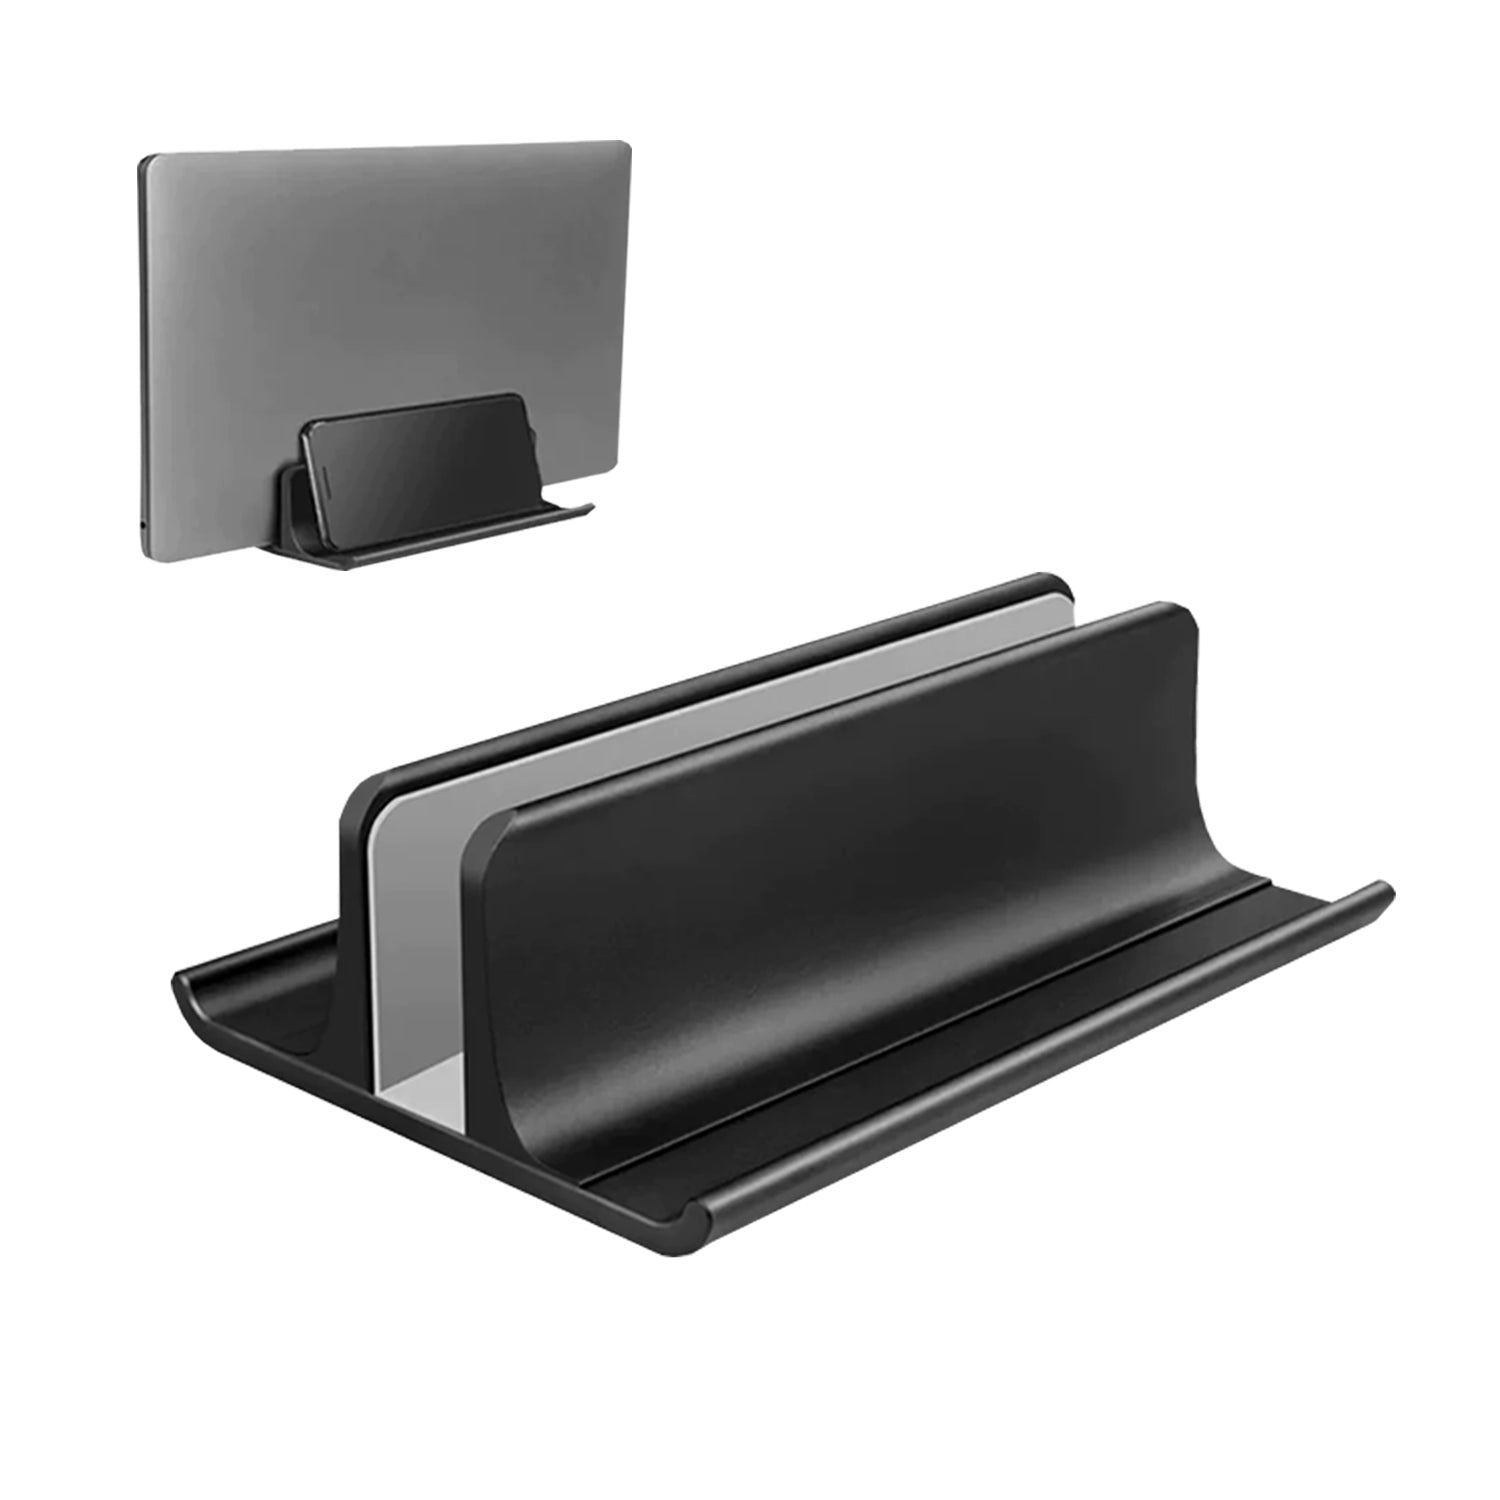 Soporte vertical de Aluminio Vaydeer SZ2053C para laptop, tablet y celular